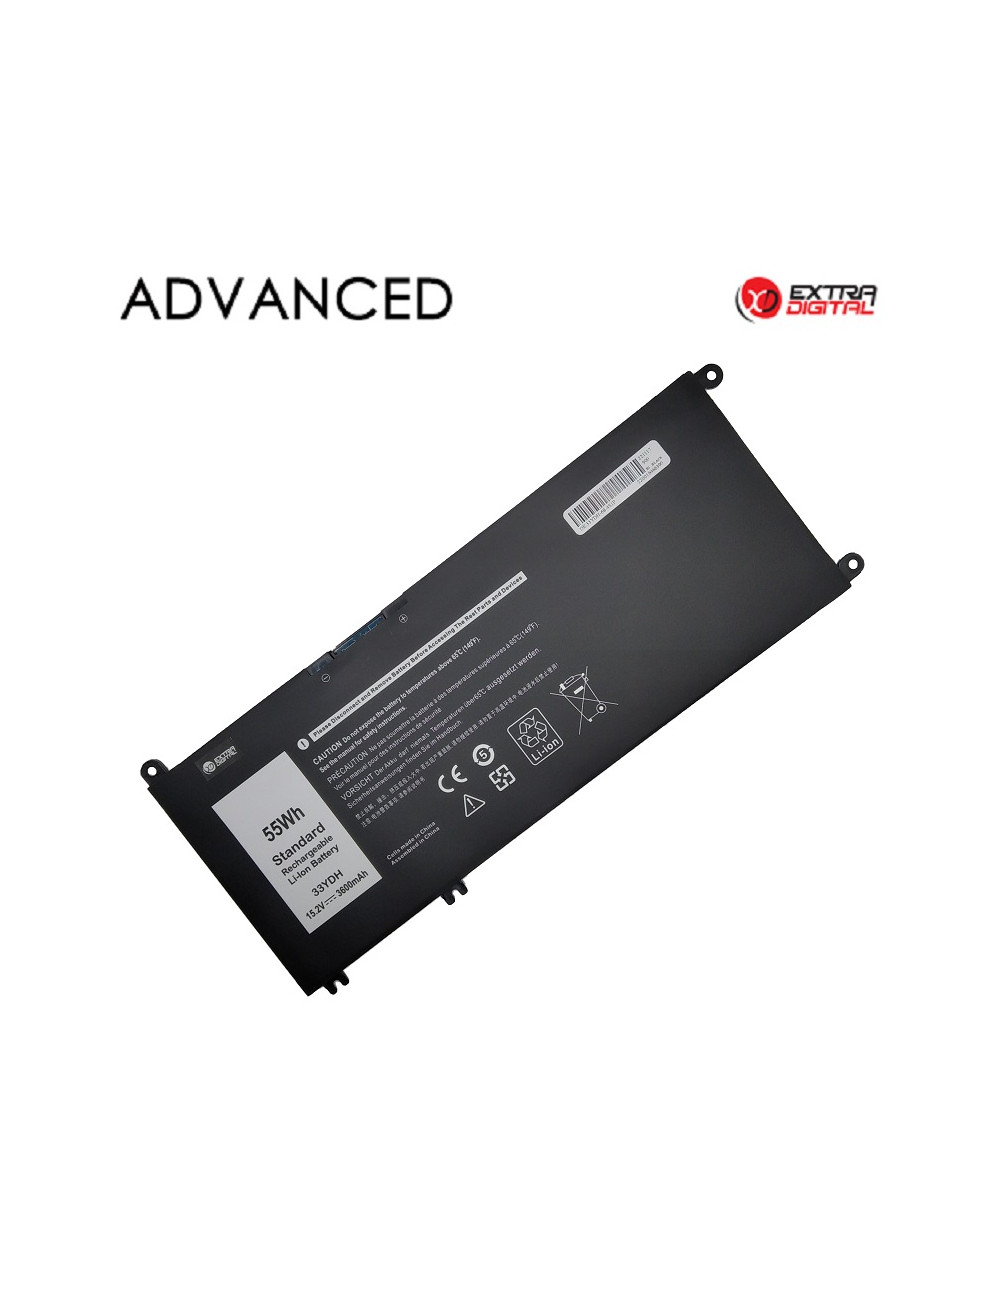 Nešiojamo kompiuterio baterija DELL 33YDH, 55Wh, Extra Digital Advanced